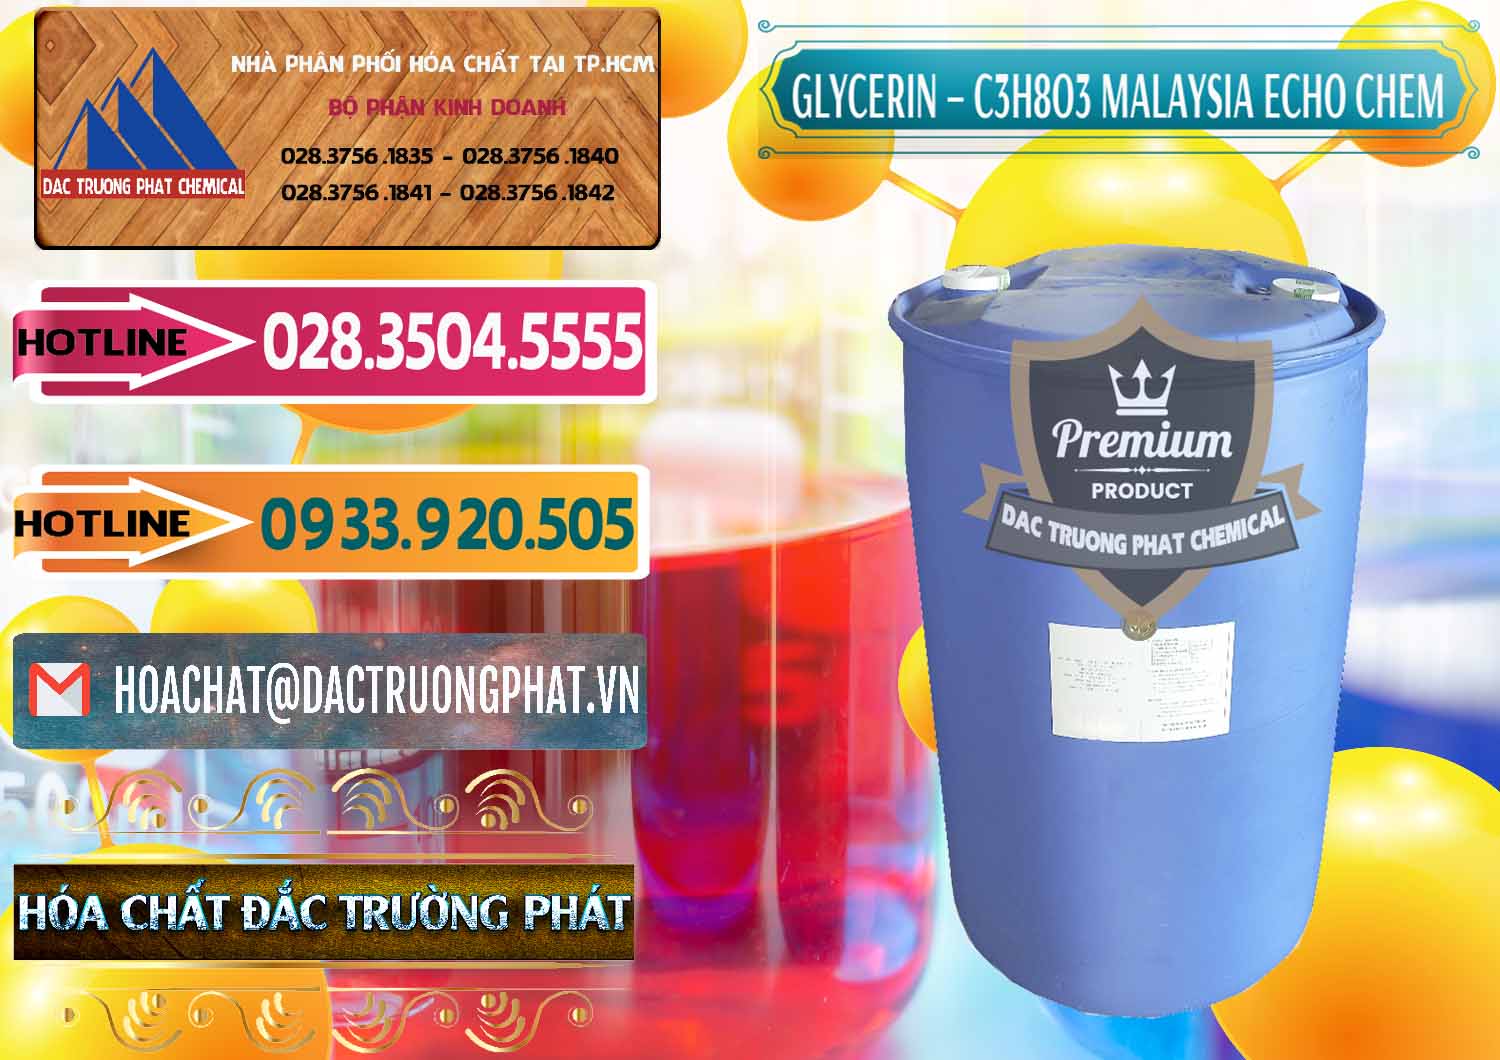 Nơi chuyên phân phối - bán C3H8O3 - Glycerin 99.7% Echo Chem Malaysia - 0273 - Nơi chuyên phân phối và nhập khẩu hóa chất tại TP.HCM - dactruongphat.vn